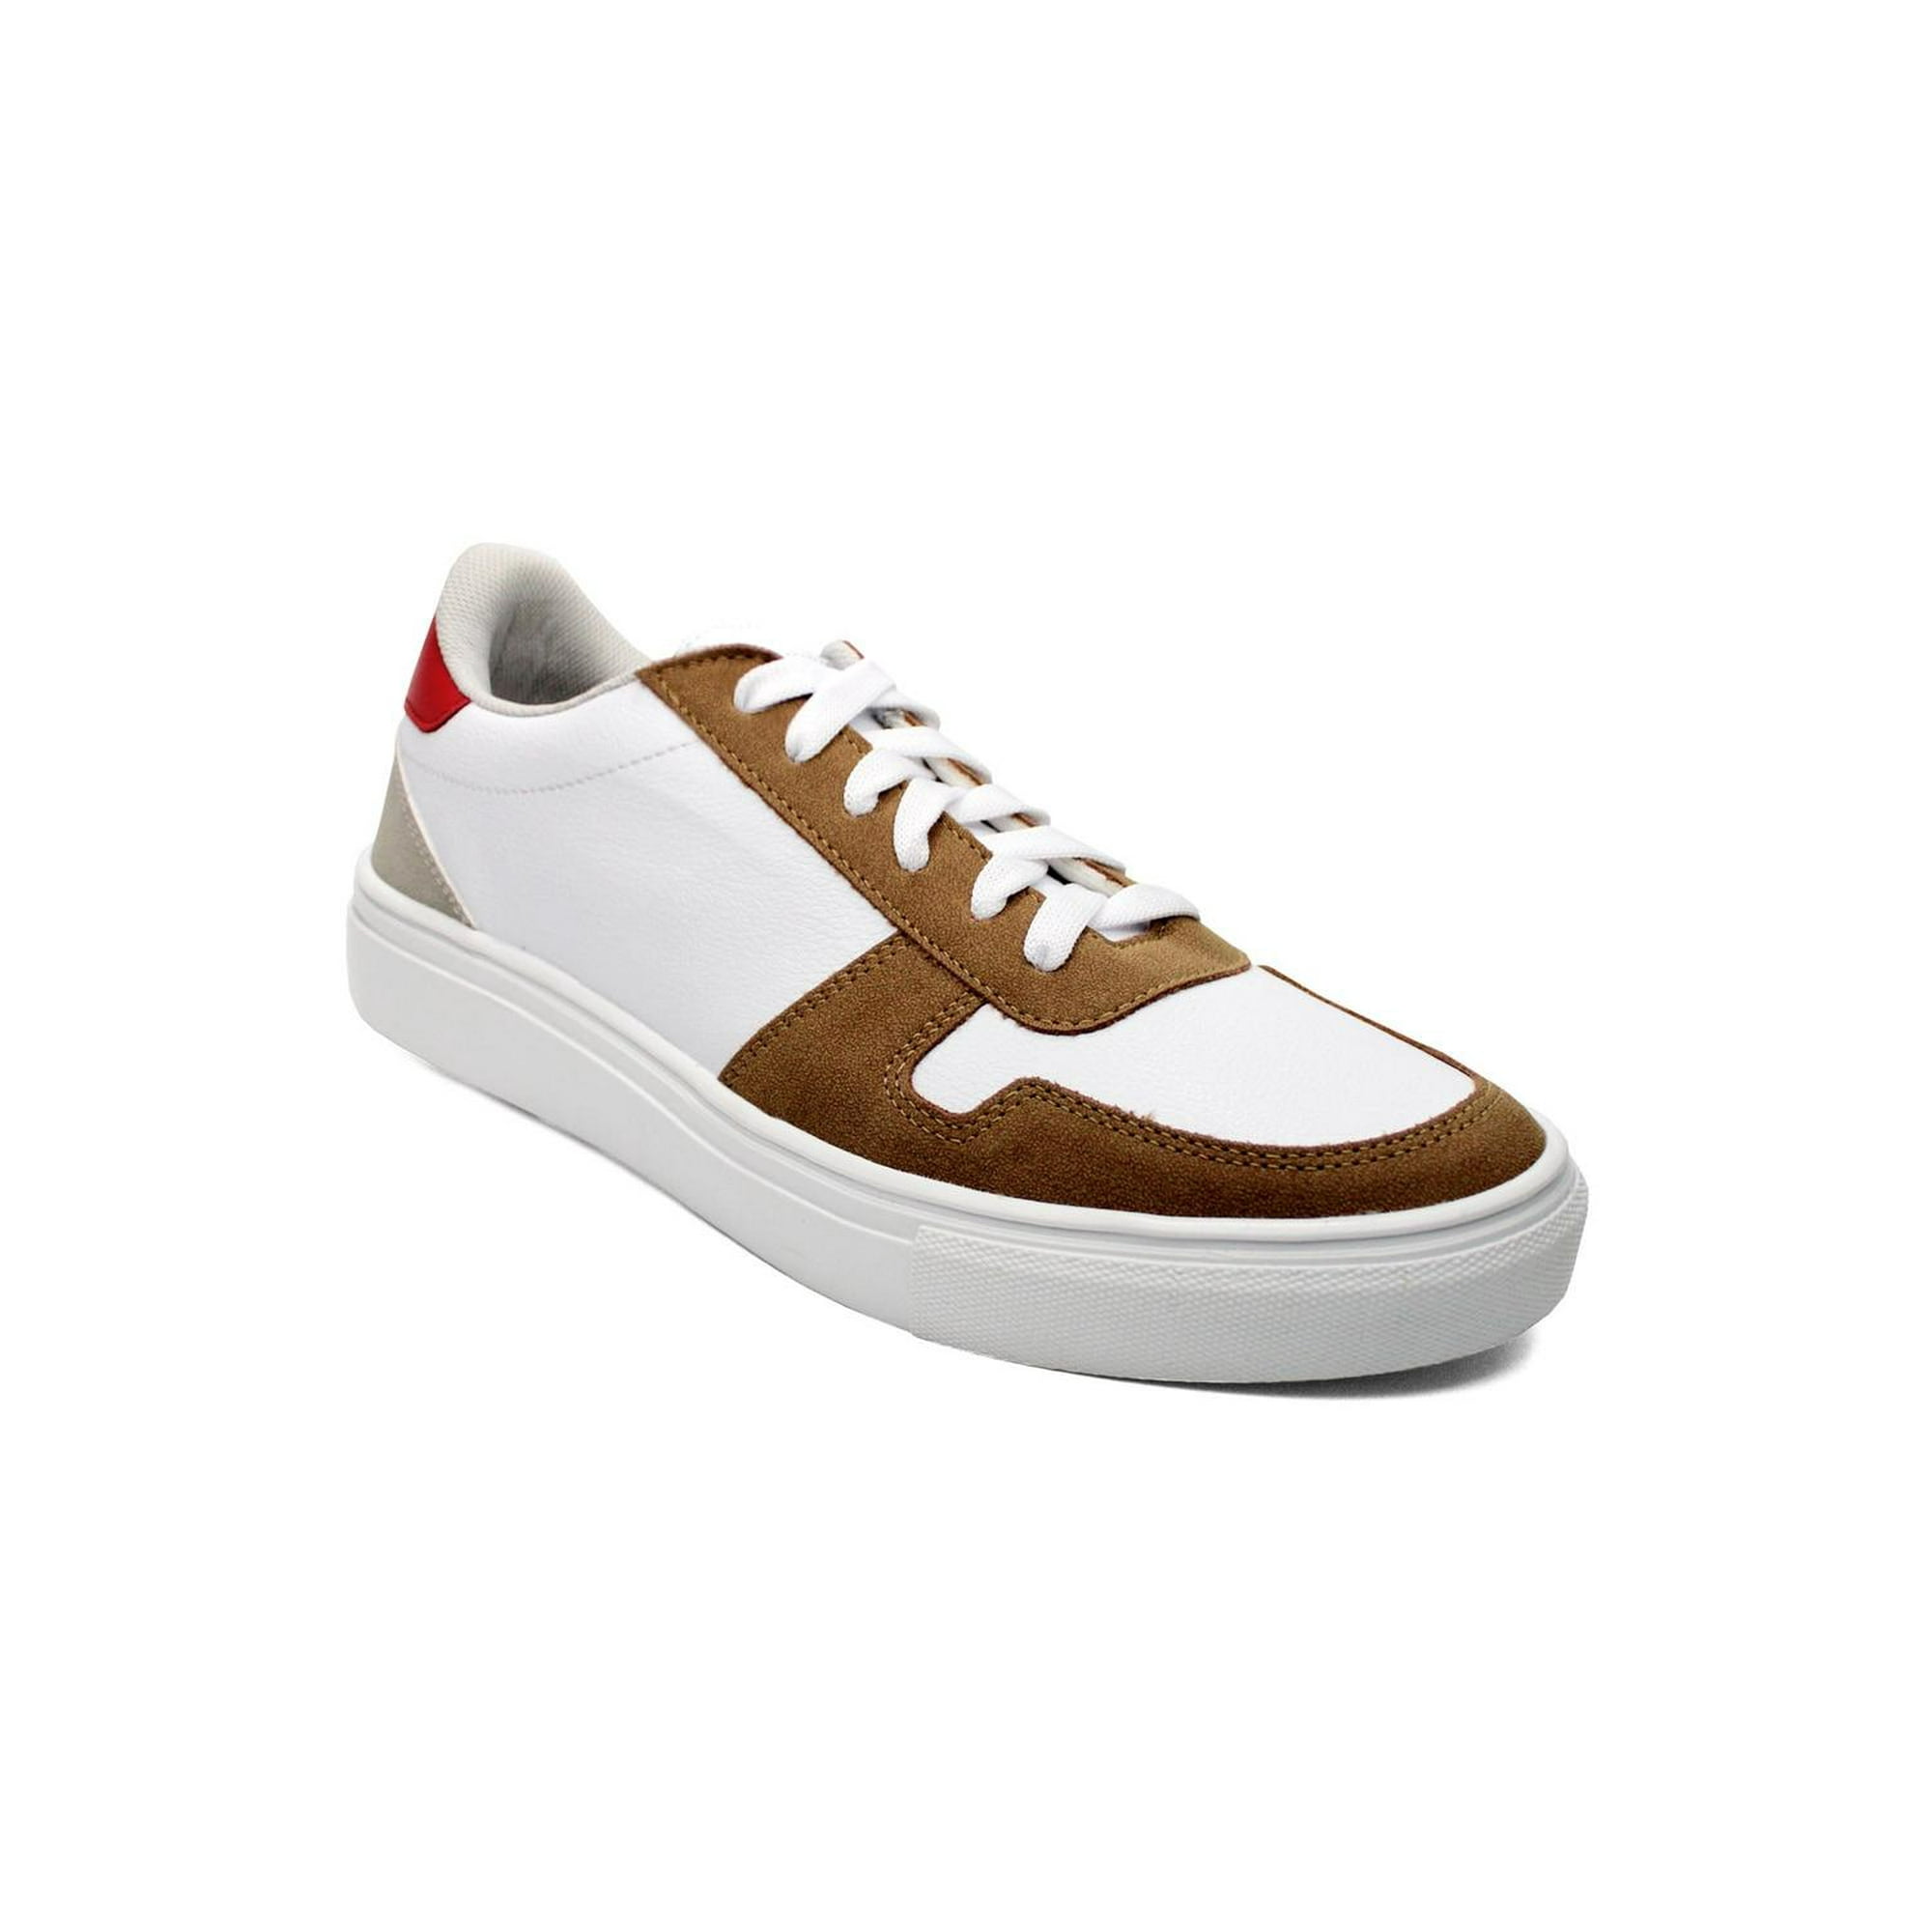 Calzado Caballero Lob Footwear 69902021 blanco LOB Footwear 69902021 | Walmart en línea